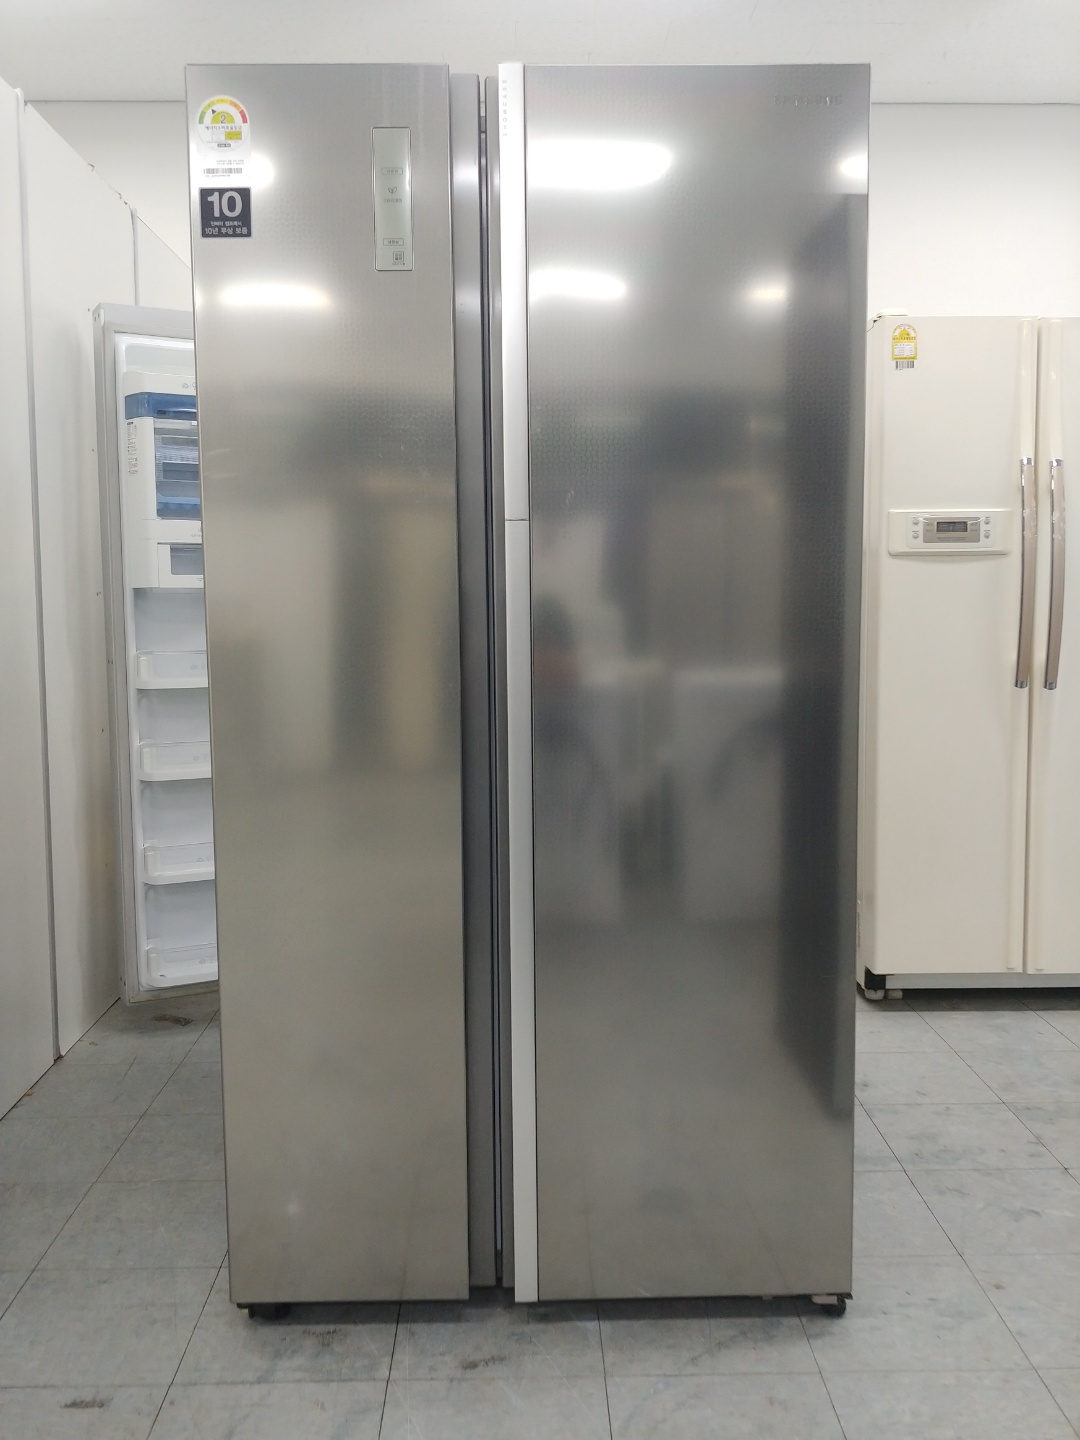 중고냉장고 삼성전자 지펠 푸드쇼케이스 양문형 냉장고 831리터 2014년 하남 092902